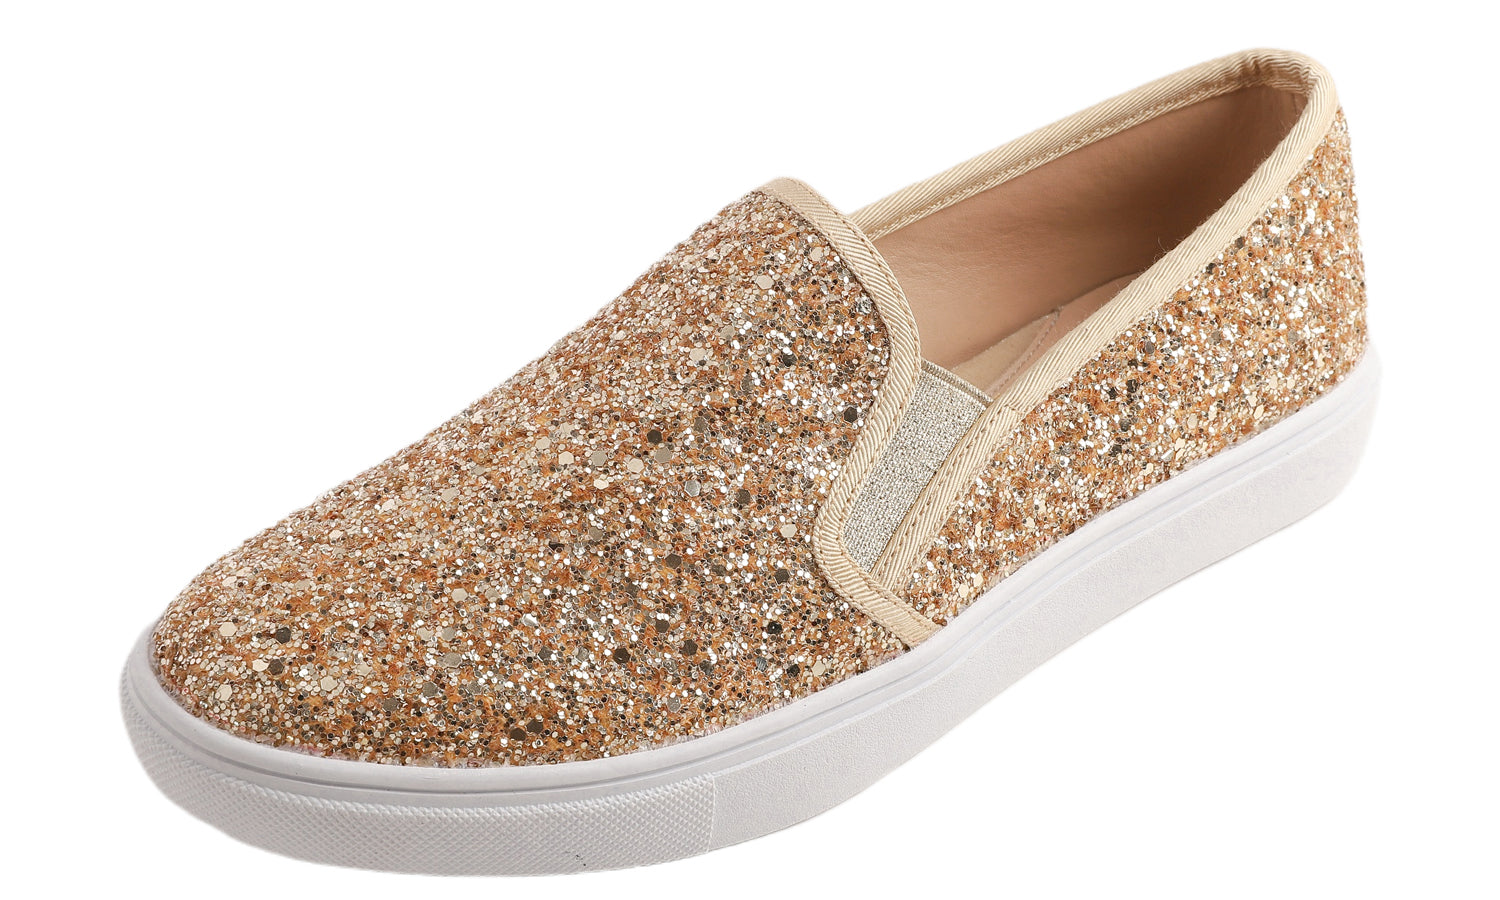 Feversole Women's Glitter Gold Slip On Sneaker Casual Flat Loafers